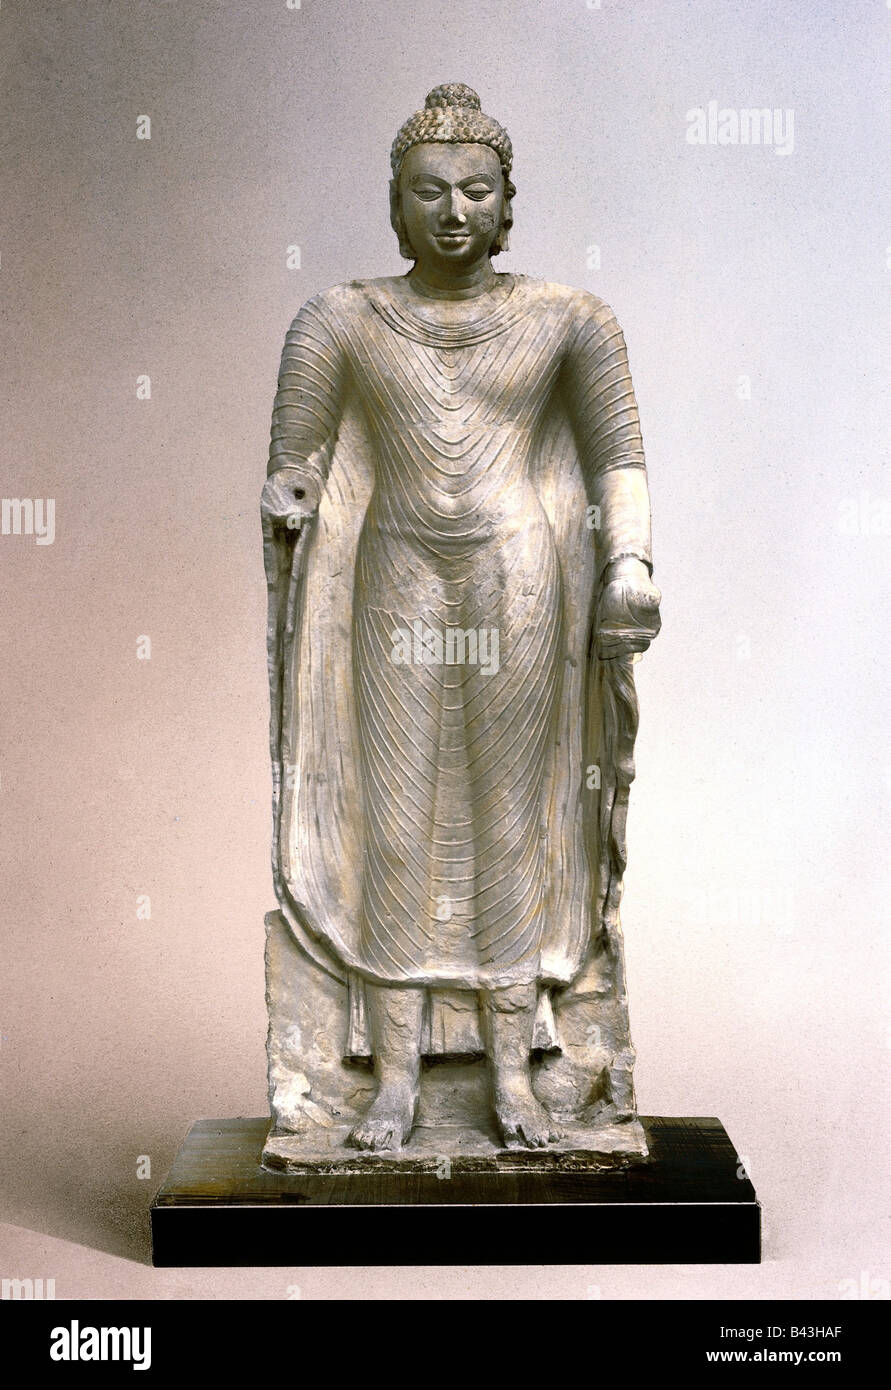 Buddha, Fürst Siddharta Gautama, 557 - 447 v. Chr., indischer Begründer des Buddhismus, Statue, stehender Buddha, Gupta-Zeit (4. - 6. Chr.), ca. 5. Jahrhundert, Stockfoto